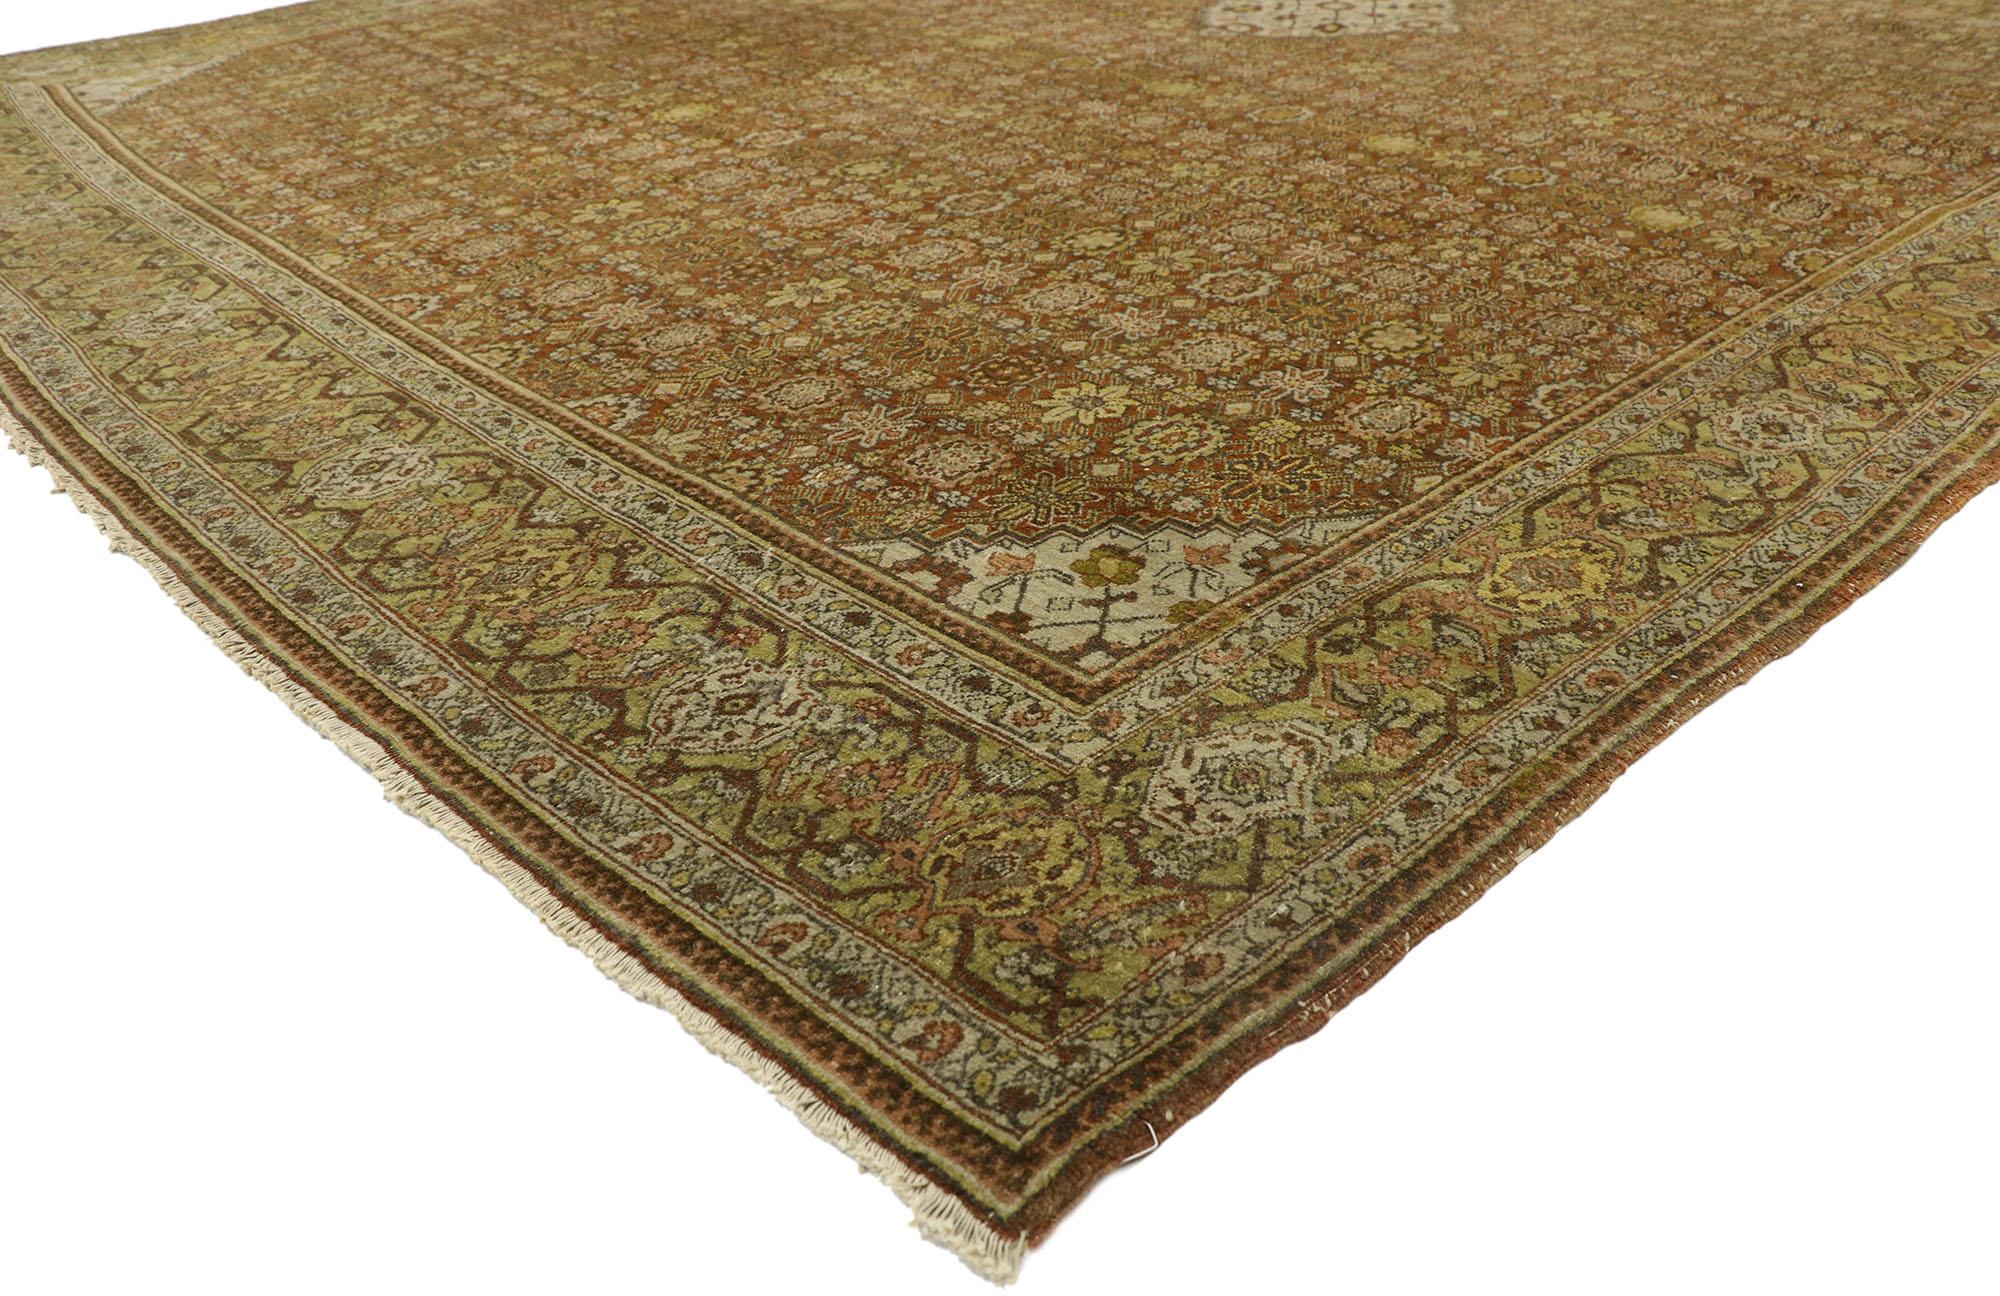 77394, ancien tapis persan Tabriz de style Arts & Crafts. Avec ses couleurs chaudes dans les tons de terre et sa composition symétrique, ce tapis Tabriz persan vintage en laine nouée à la main étonne par sa beauté. Il présente un médaillon central